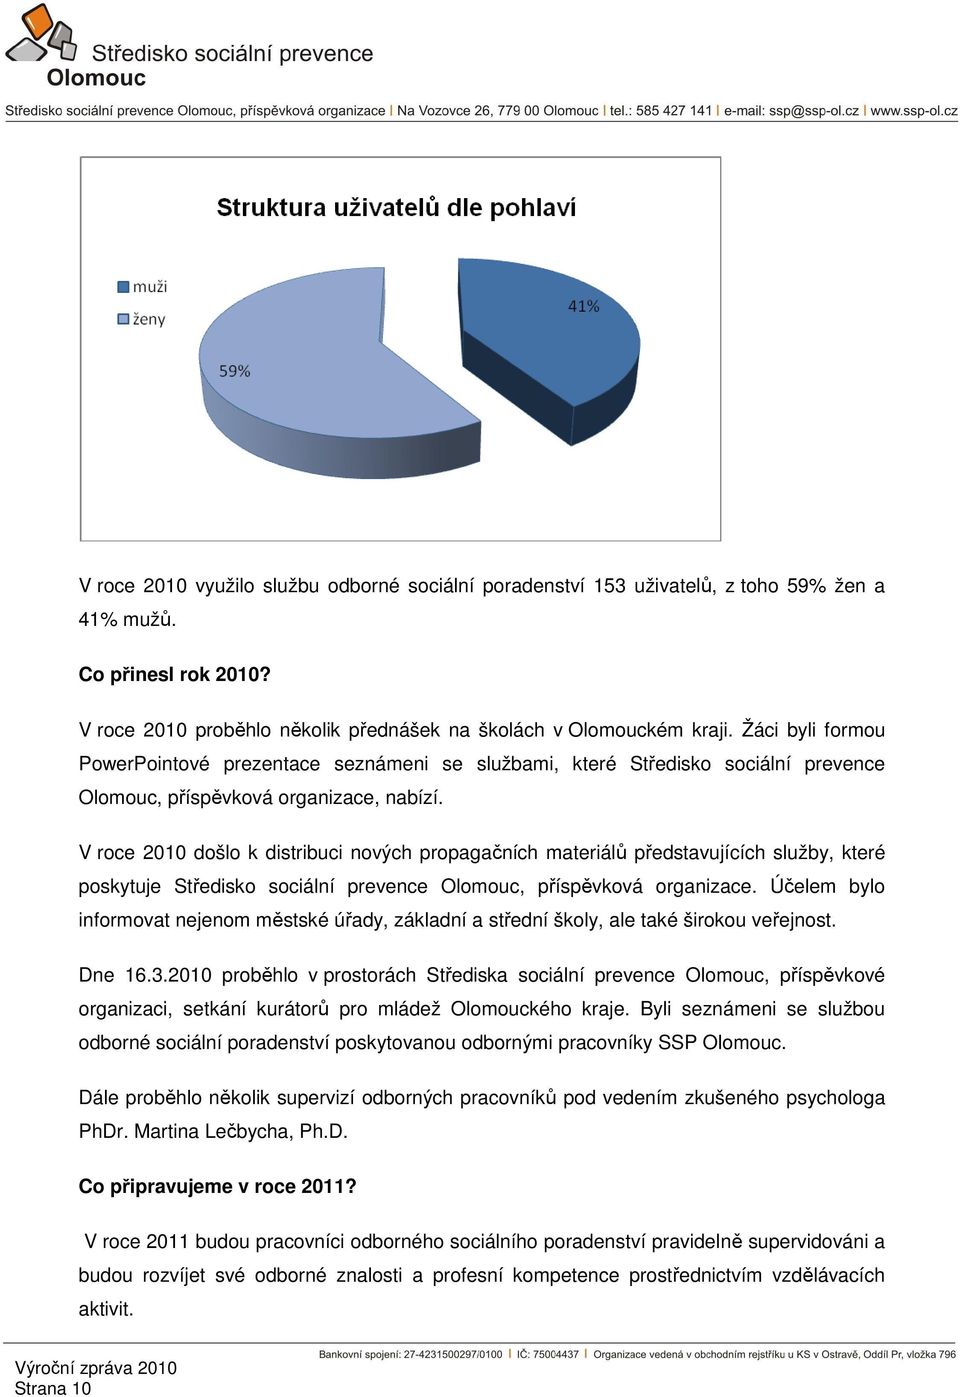 V roce 2010 došlo k distribuci nových propagačních materiálů představujících služby, které poskytuje Středisko sociální prevence Olomouc, příspěvková organizace.